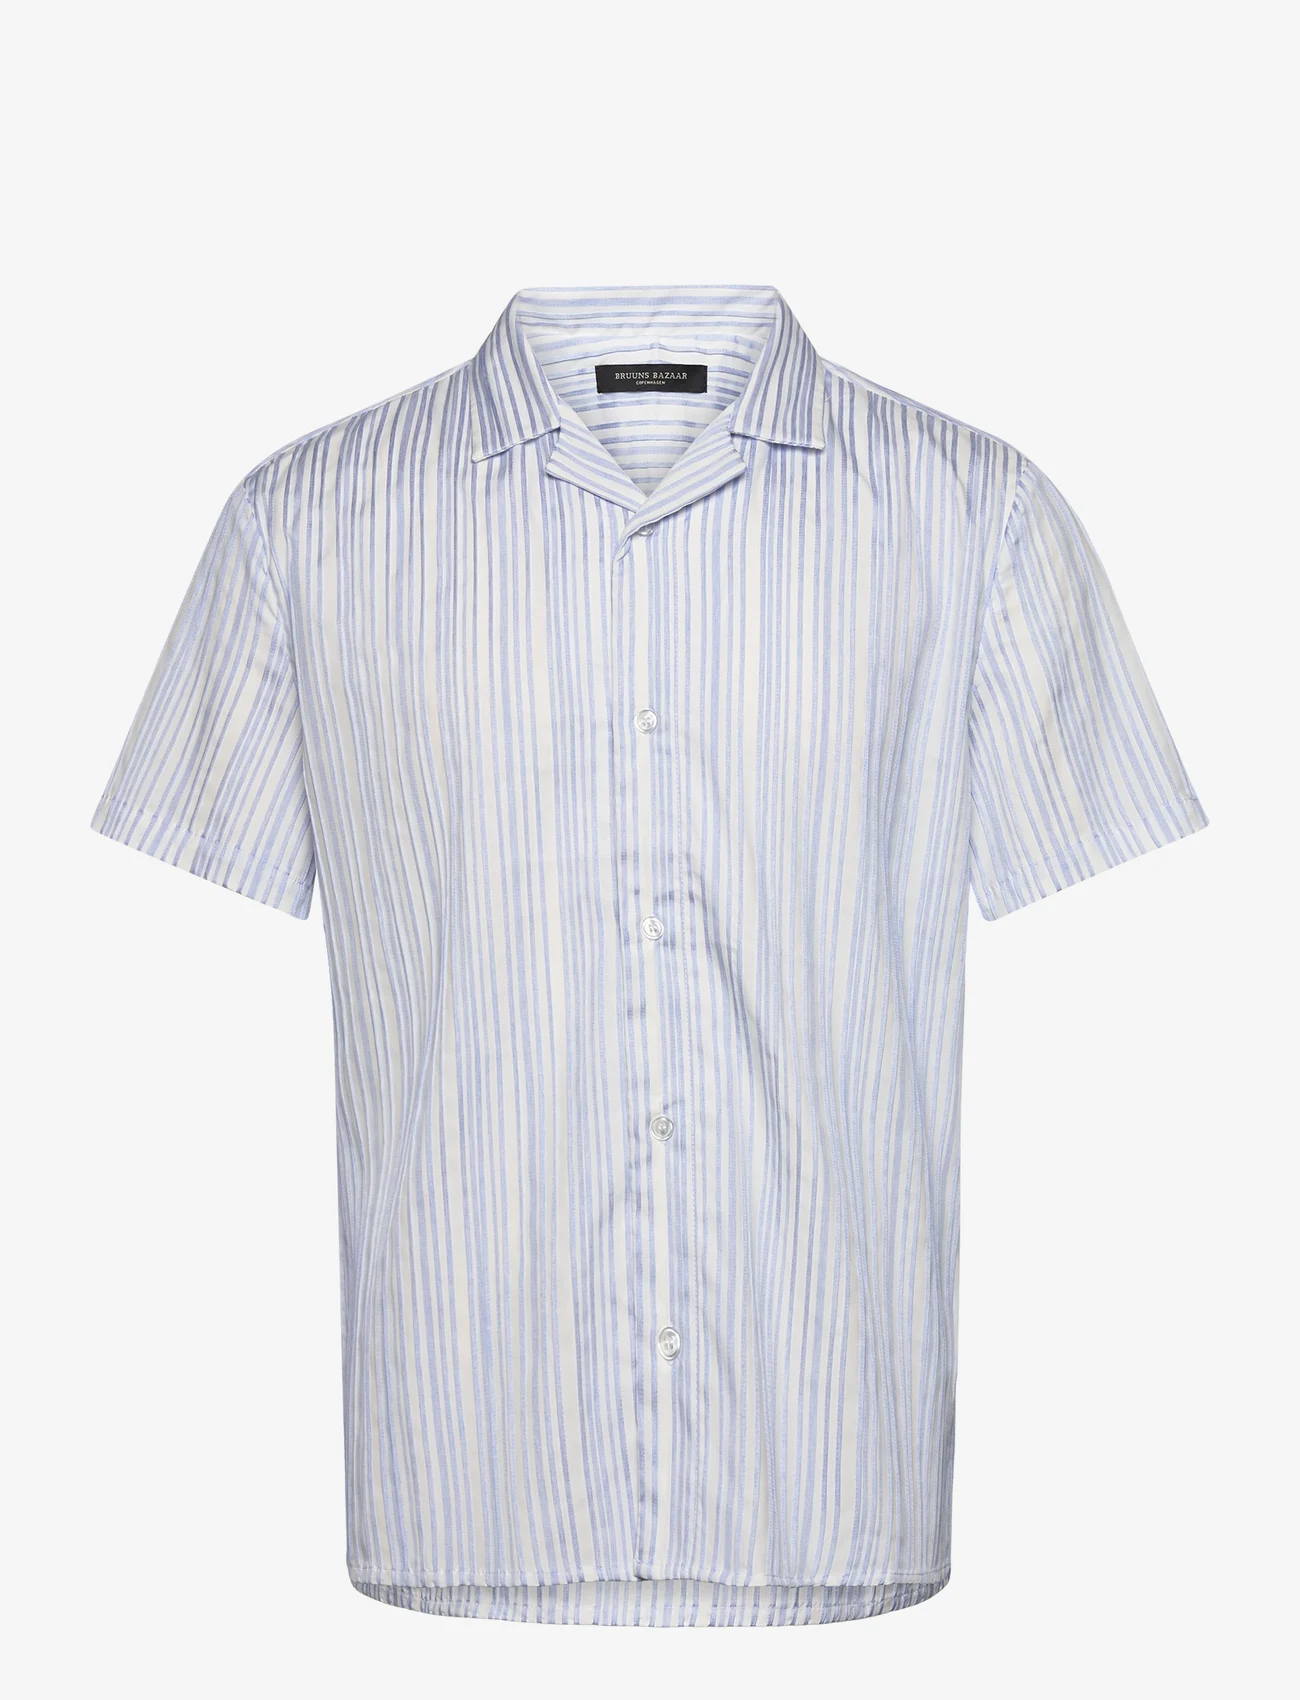 Bruuns Bazaar - DimensionBBHomme shirt - lühikeste varrukatega särgid - light blue stripe - 0